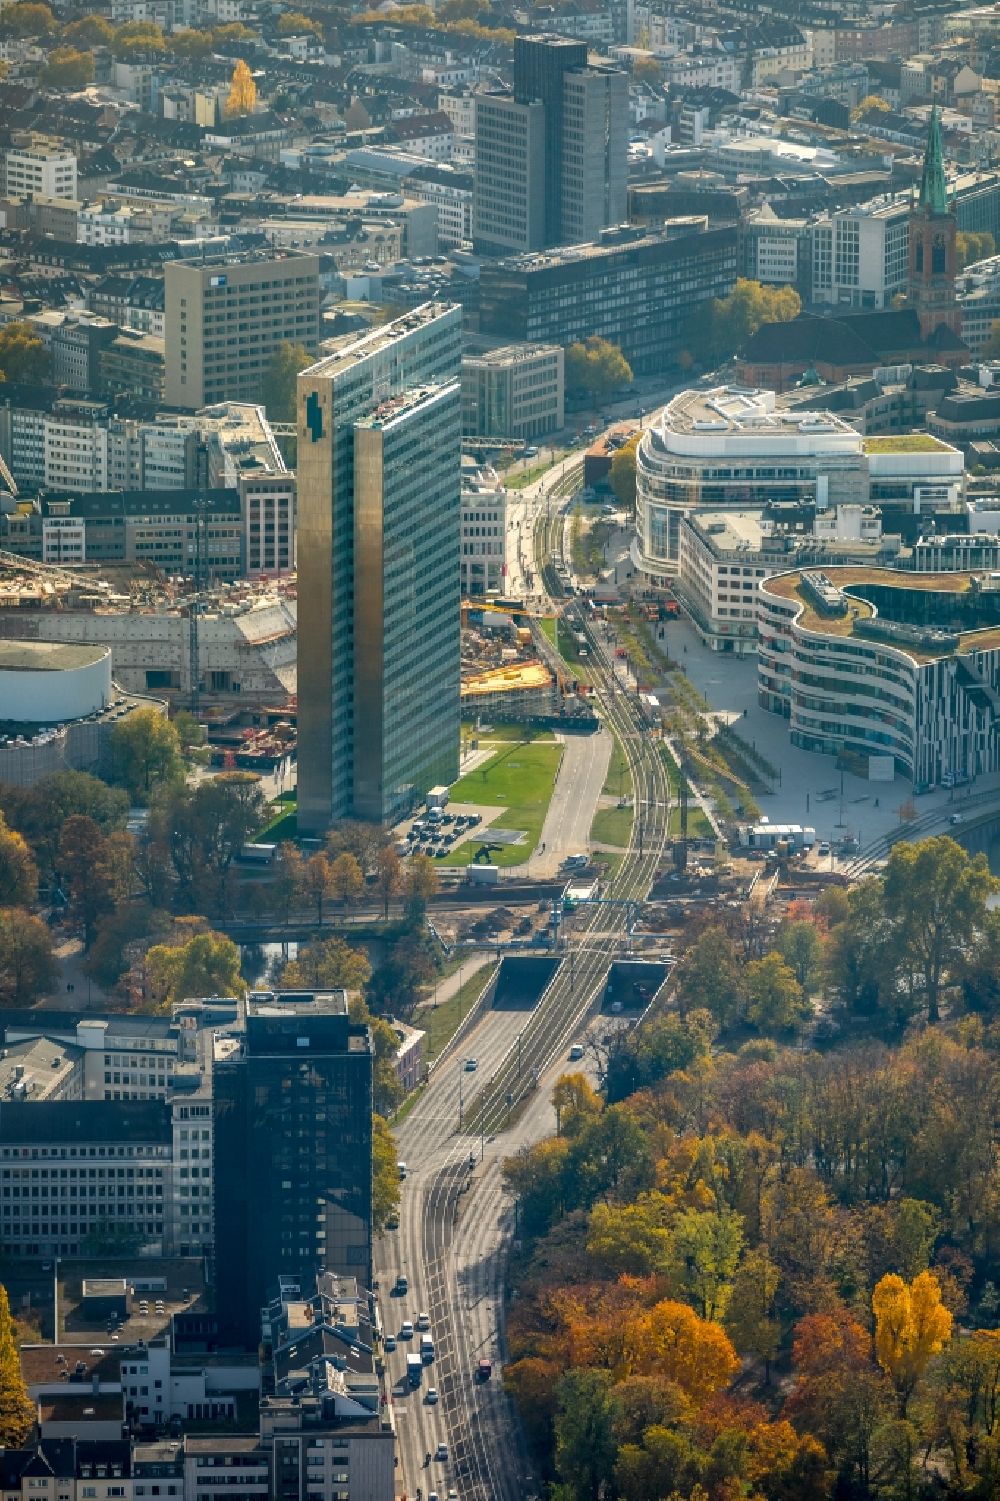 Luftbild Düsseldorf - Baustelle zum Neubau des Kö- Tunnels im Bereich des Kö-Bogen am Hochhaus Dreischeibenhaus entlang der Berliner Allee in Düsseldorf im Bundesland Nordrhein-Westfalen